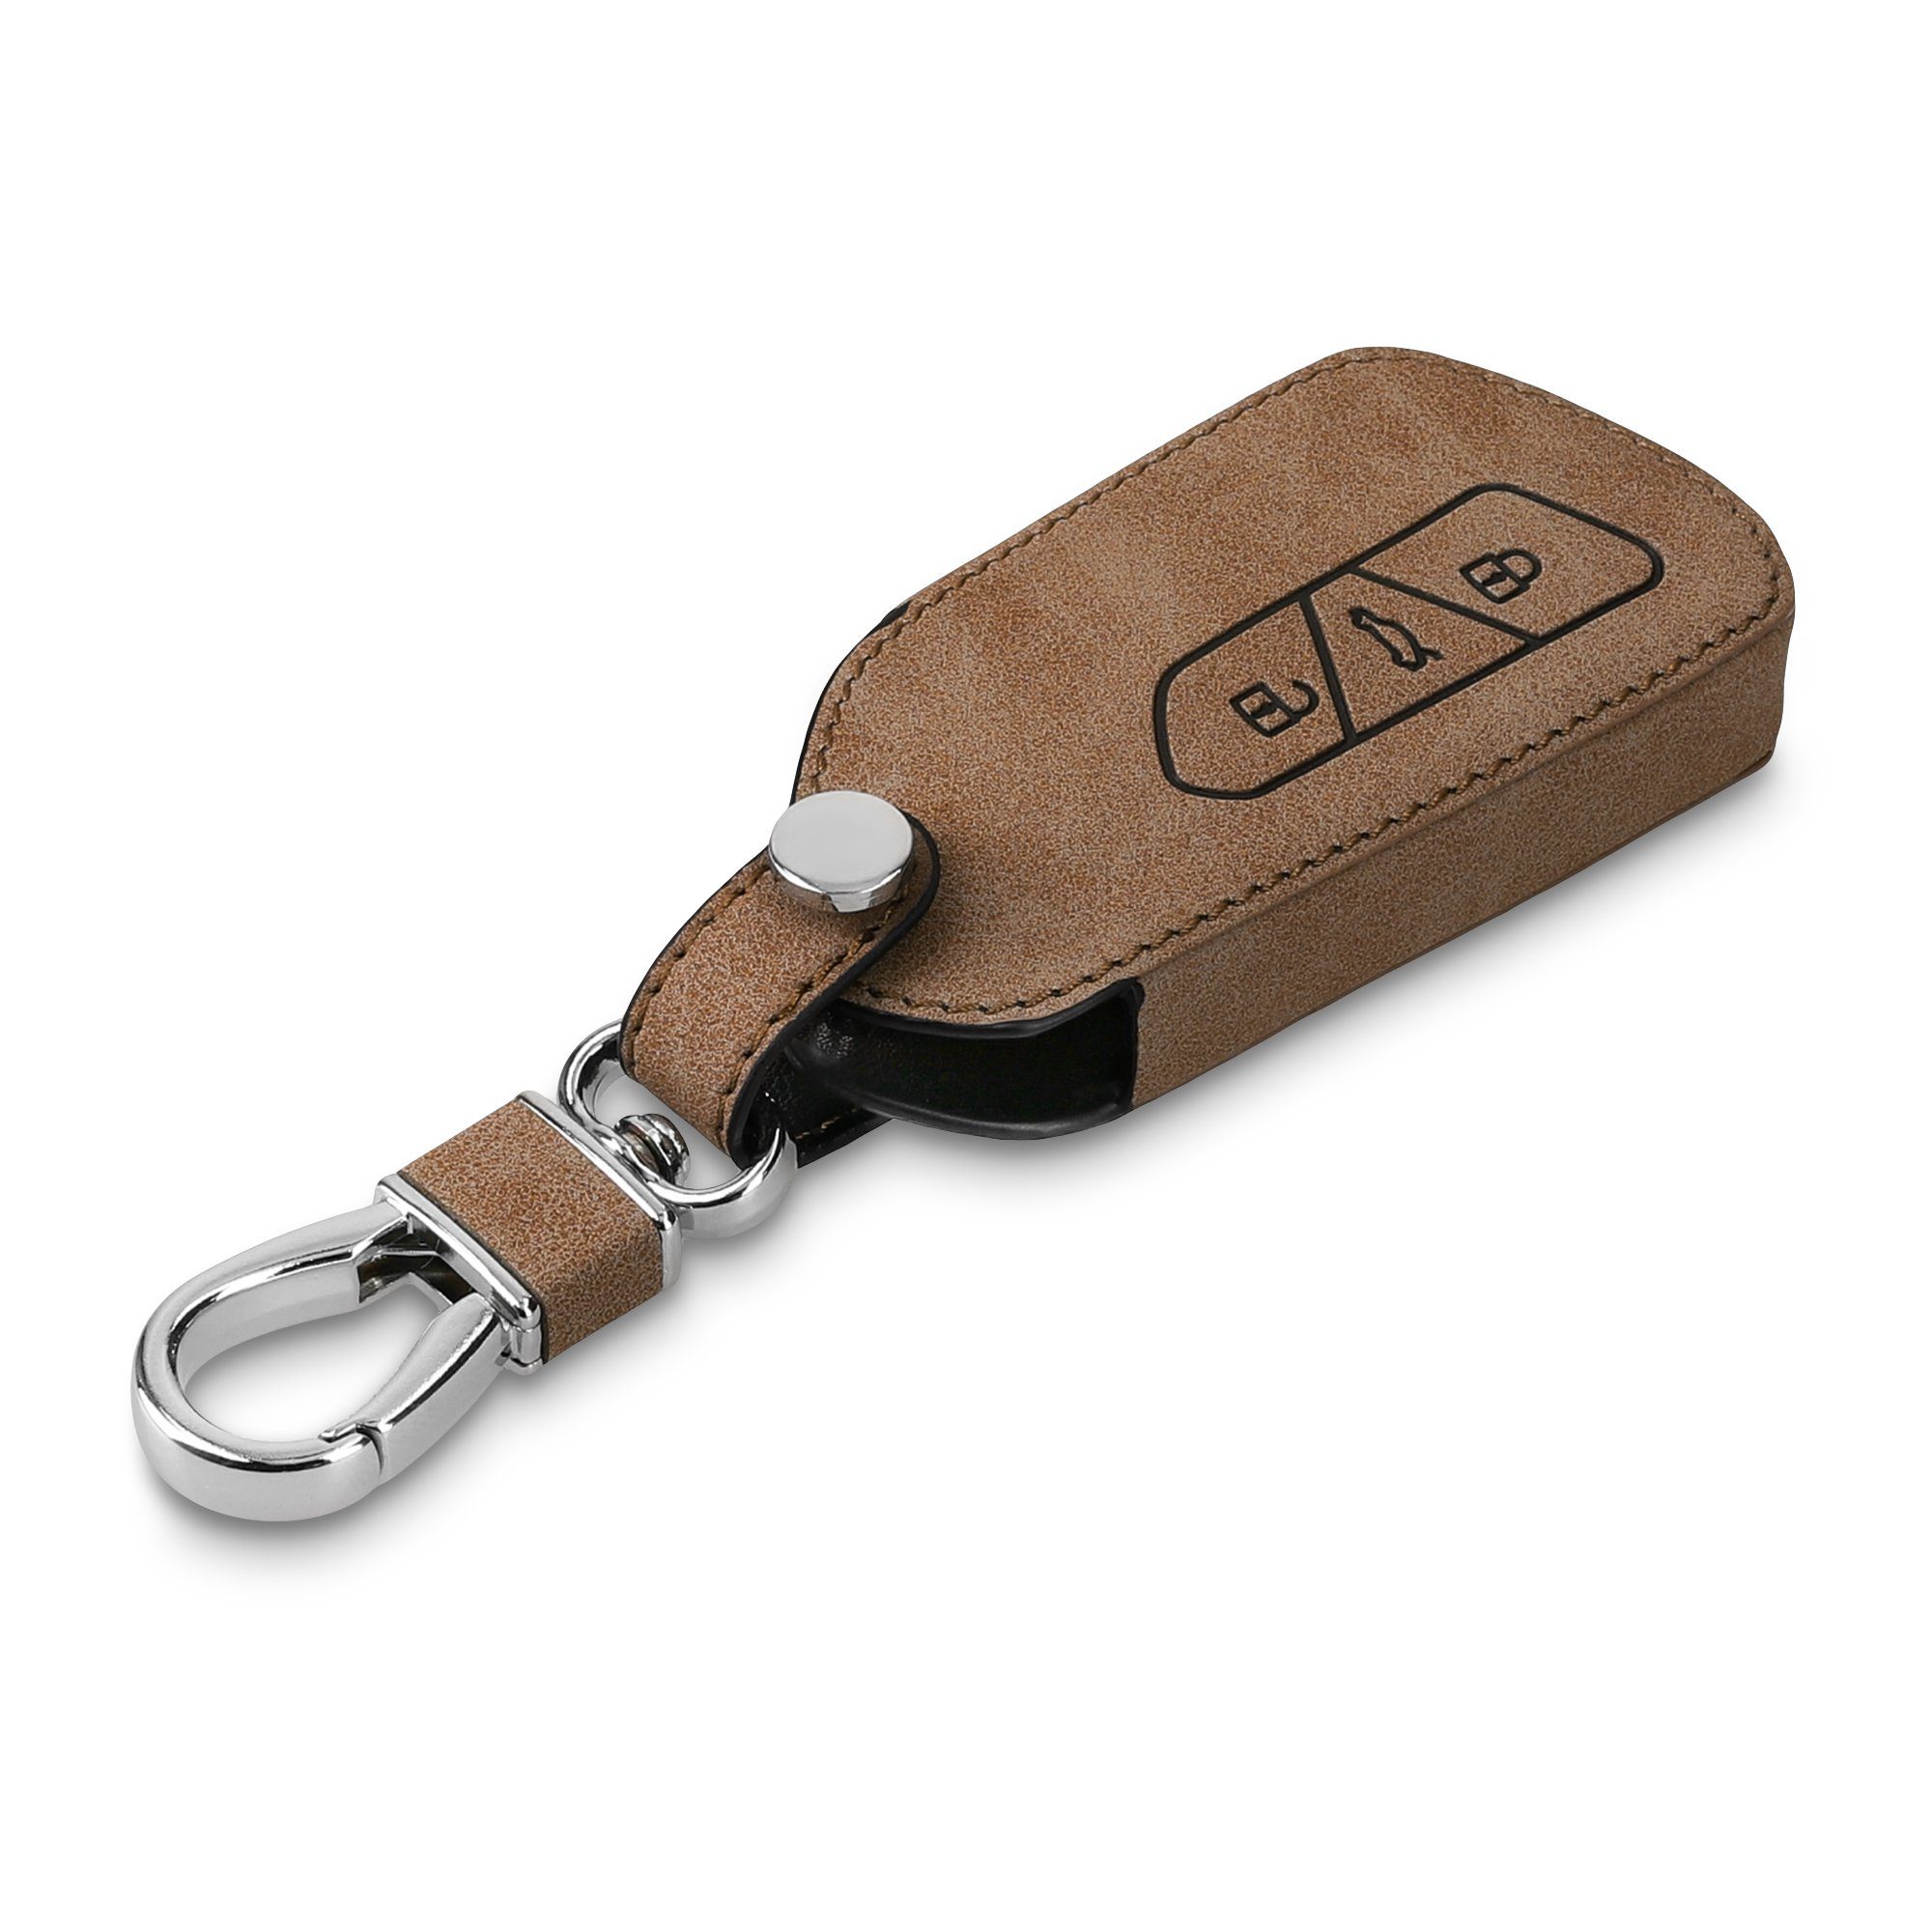 Schutzhülle für Case Schlüssel Kunstleder VW kwmobile 8, Golf Autoschlüssel Cover Hülle Schlüsselhülle - Schlüsseltasche